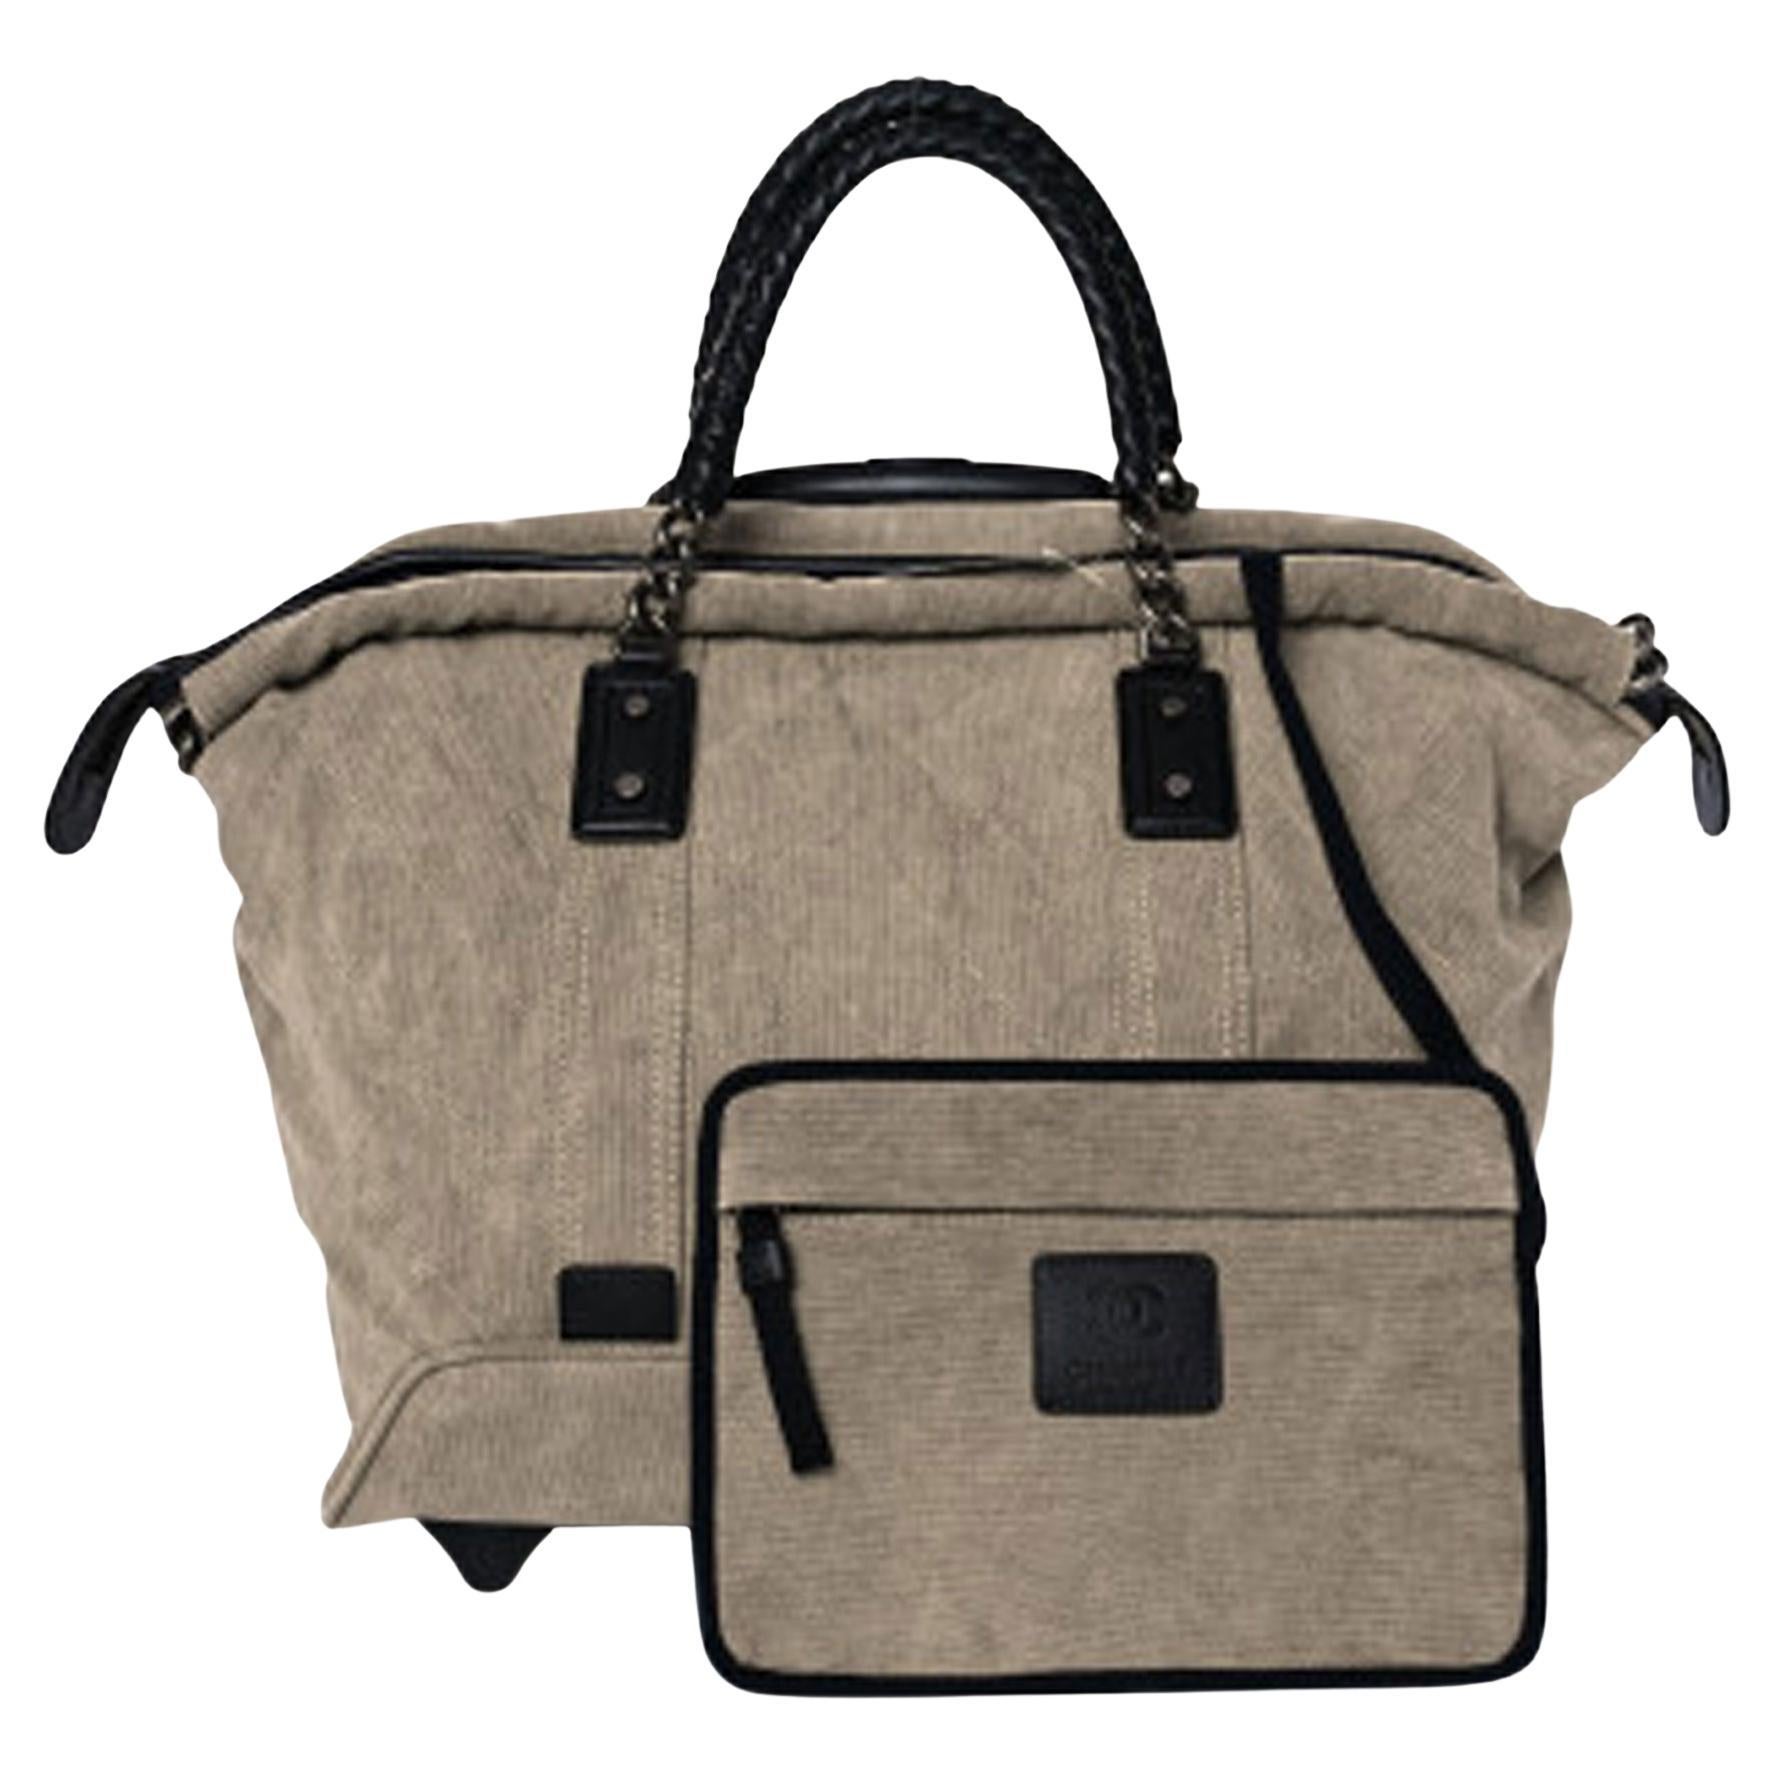 Chanel Mini Small Bag - 109 For Sale on 1stDibs  tiny chanel bag, chanel  purse small, chanel small bag